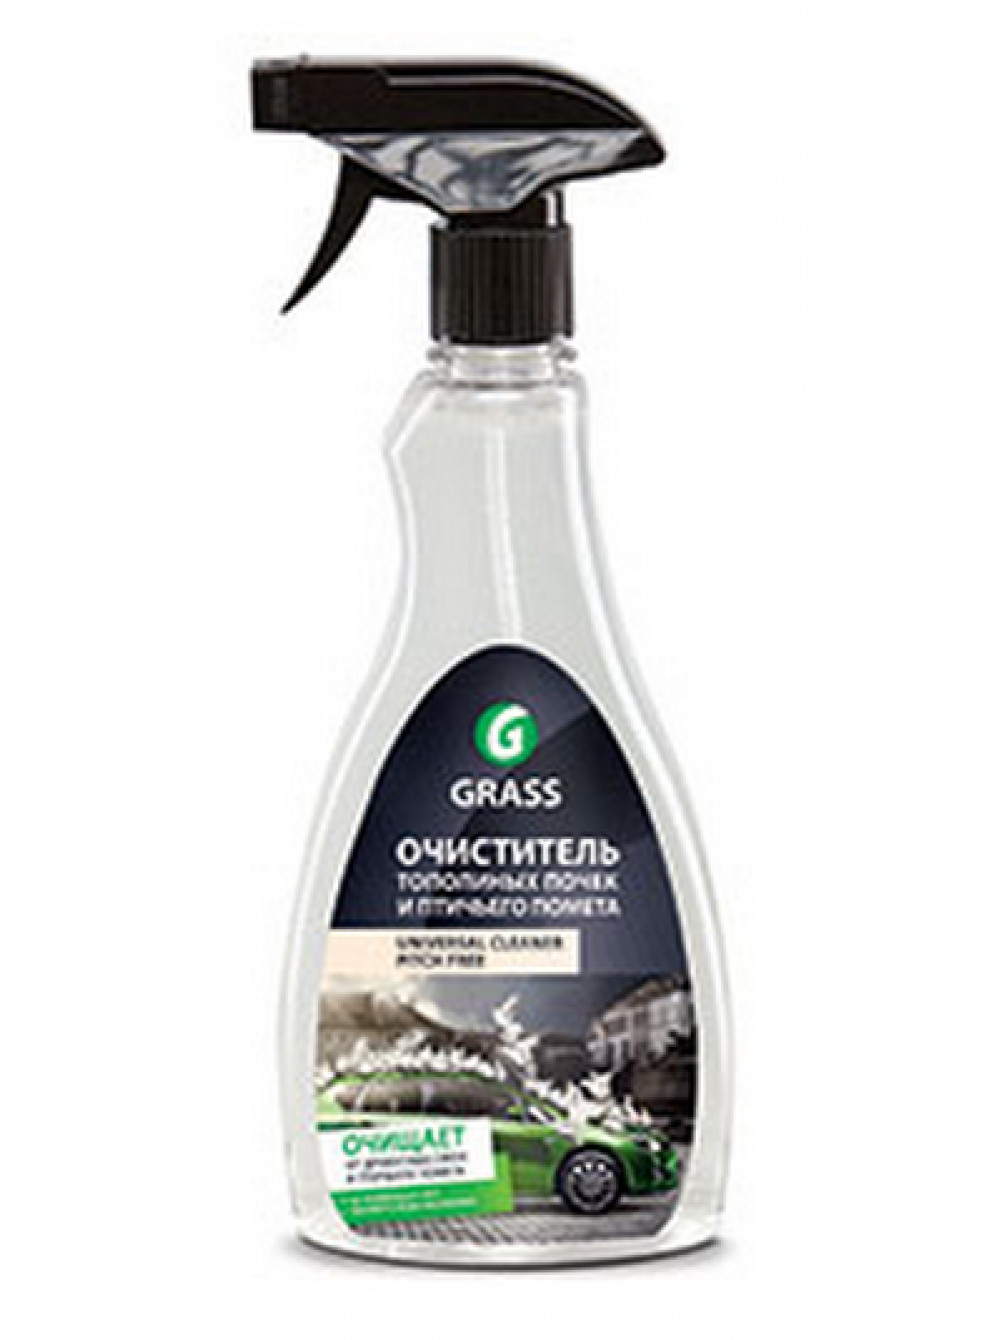 Очиститель тополиных почек и птичьего помета GRASS «Universal Cleaner Pitch Free», спрей, 500 мл